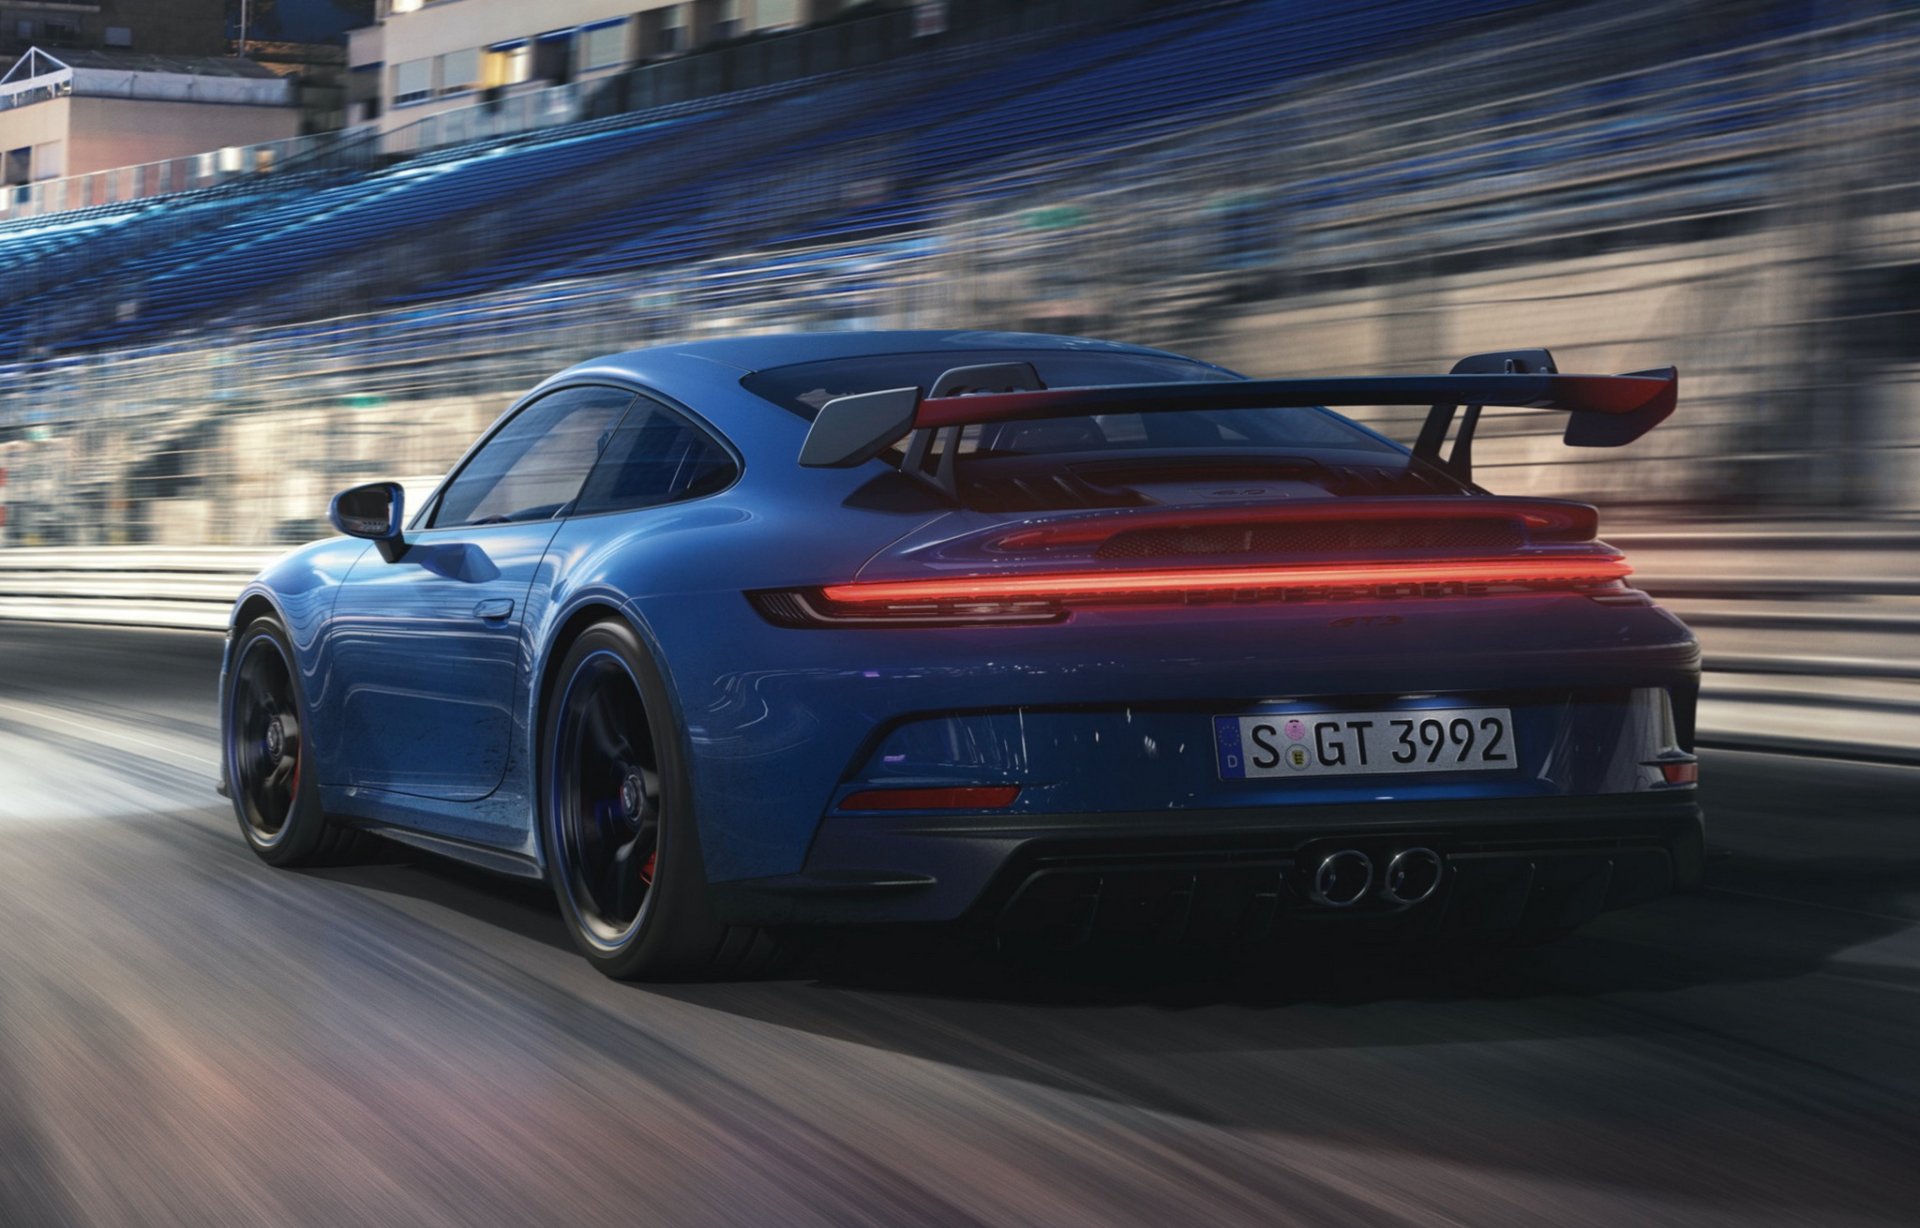 Porsche 911 GT3 กบฮาร์ดคอร์ตัวใหม่ วิ่งพริ้วรอบ Nuerburgring เร็วกว่าตัวก่อน 17 วินาที